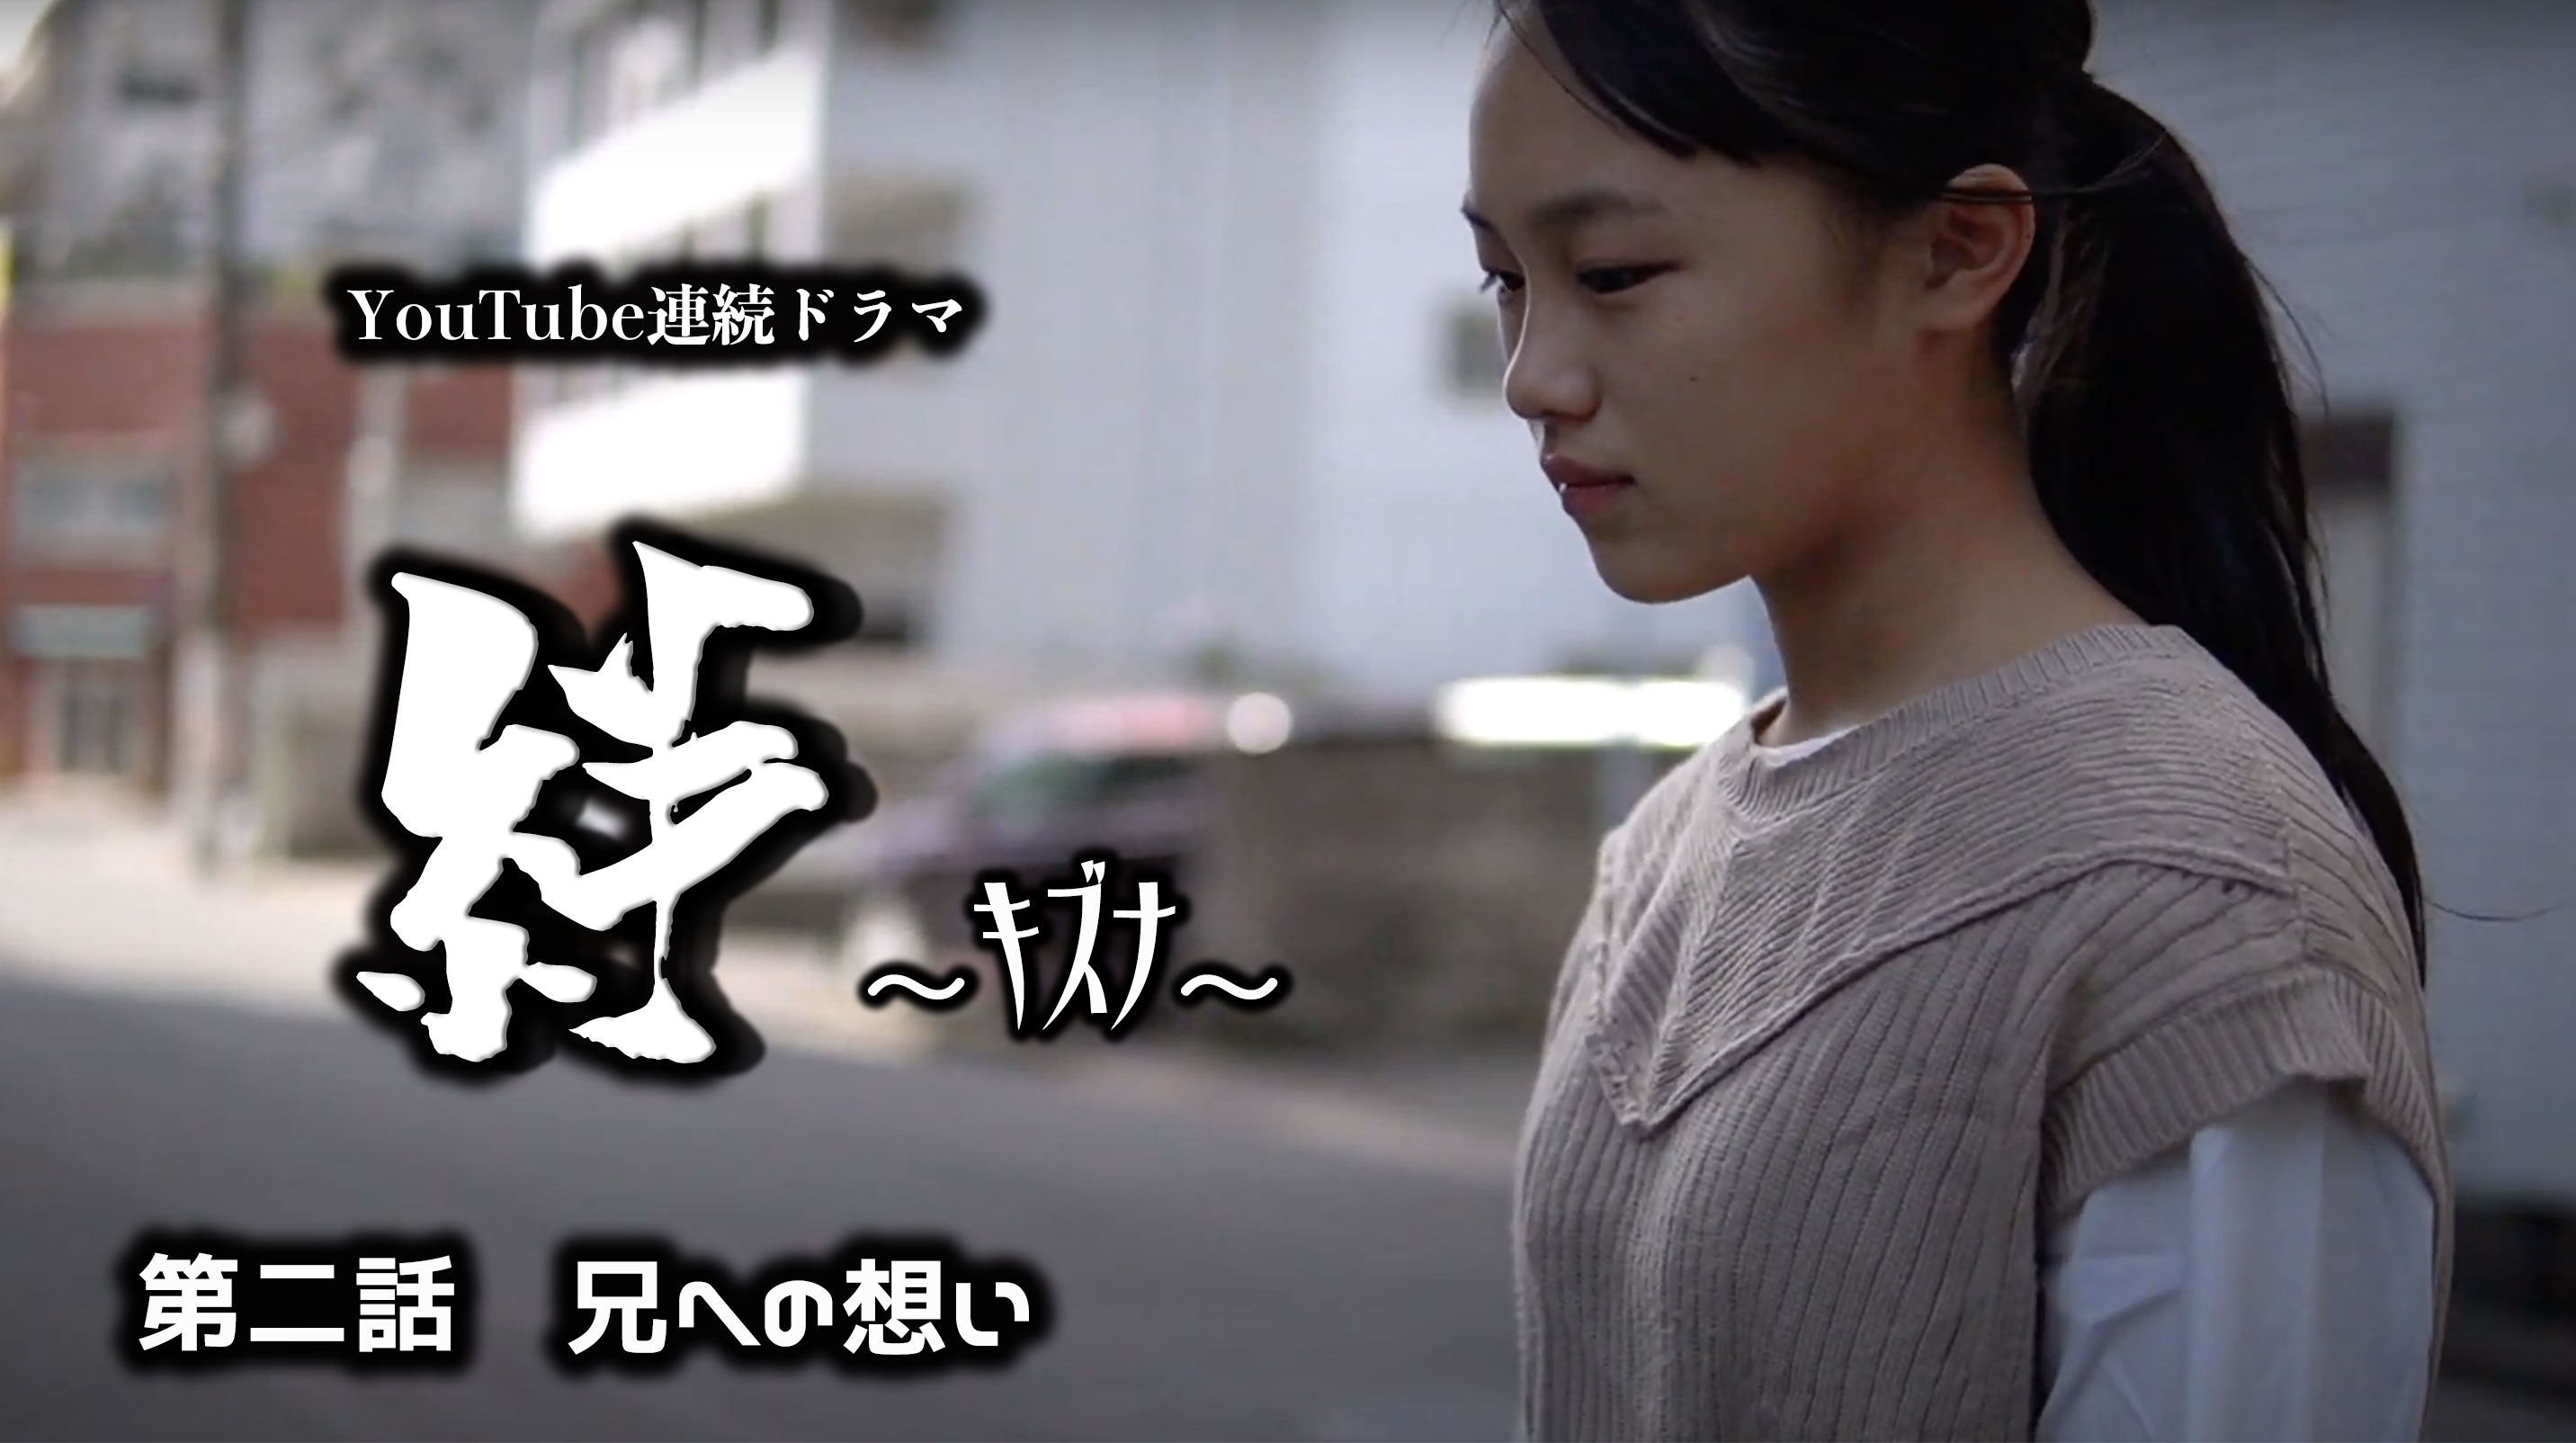 連続ドラマ 絆 キズナ 第二話を公開 広島 サムライショー 侍殺陣体験 サムライユニット大義